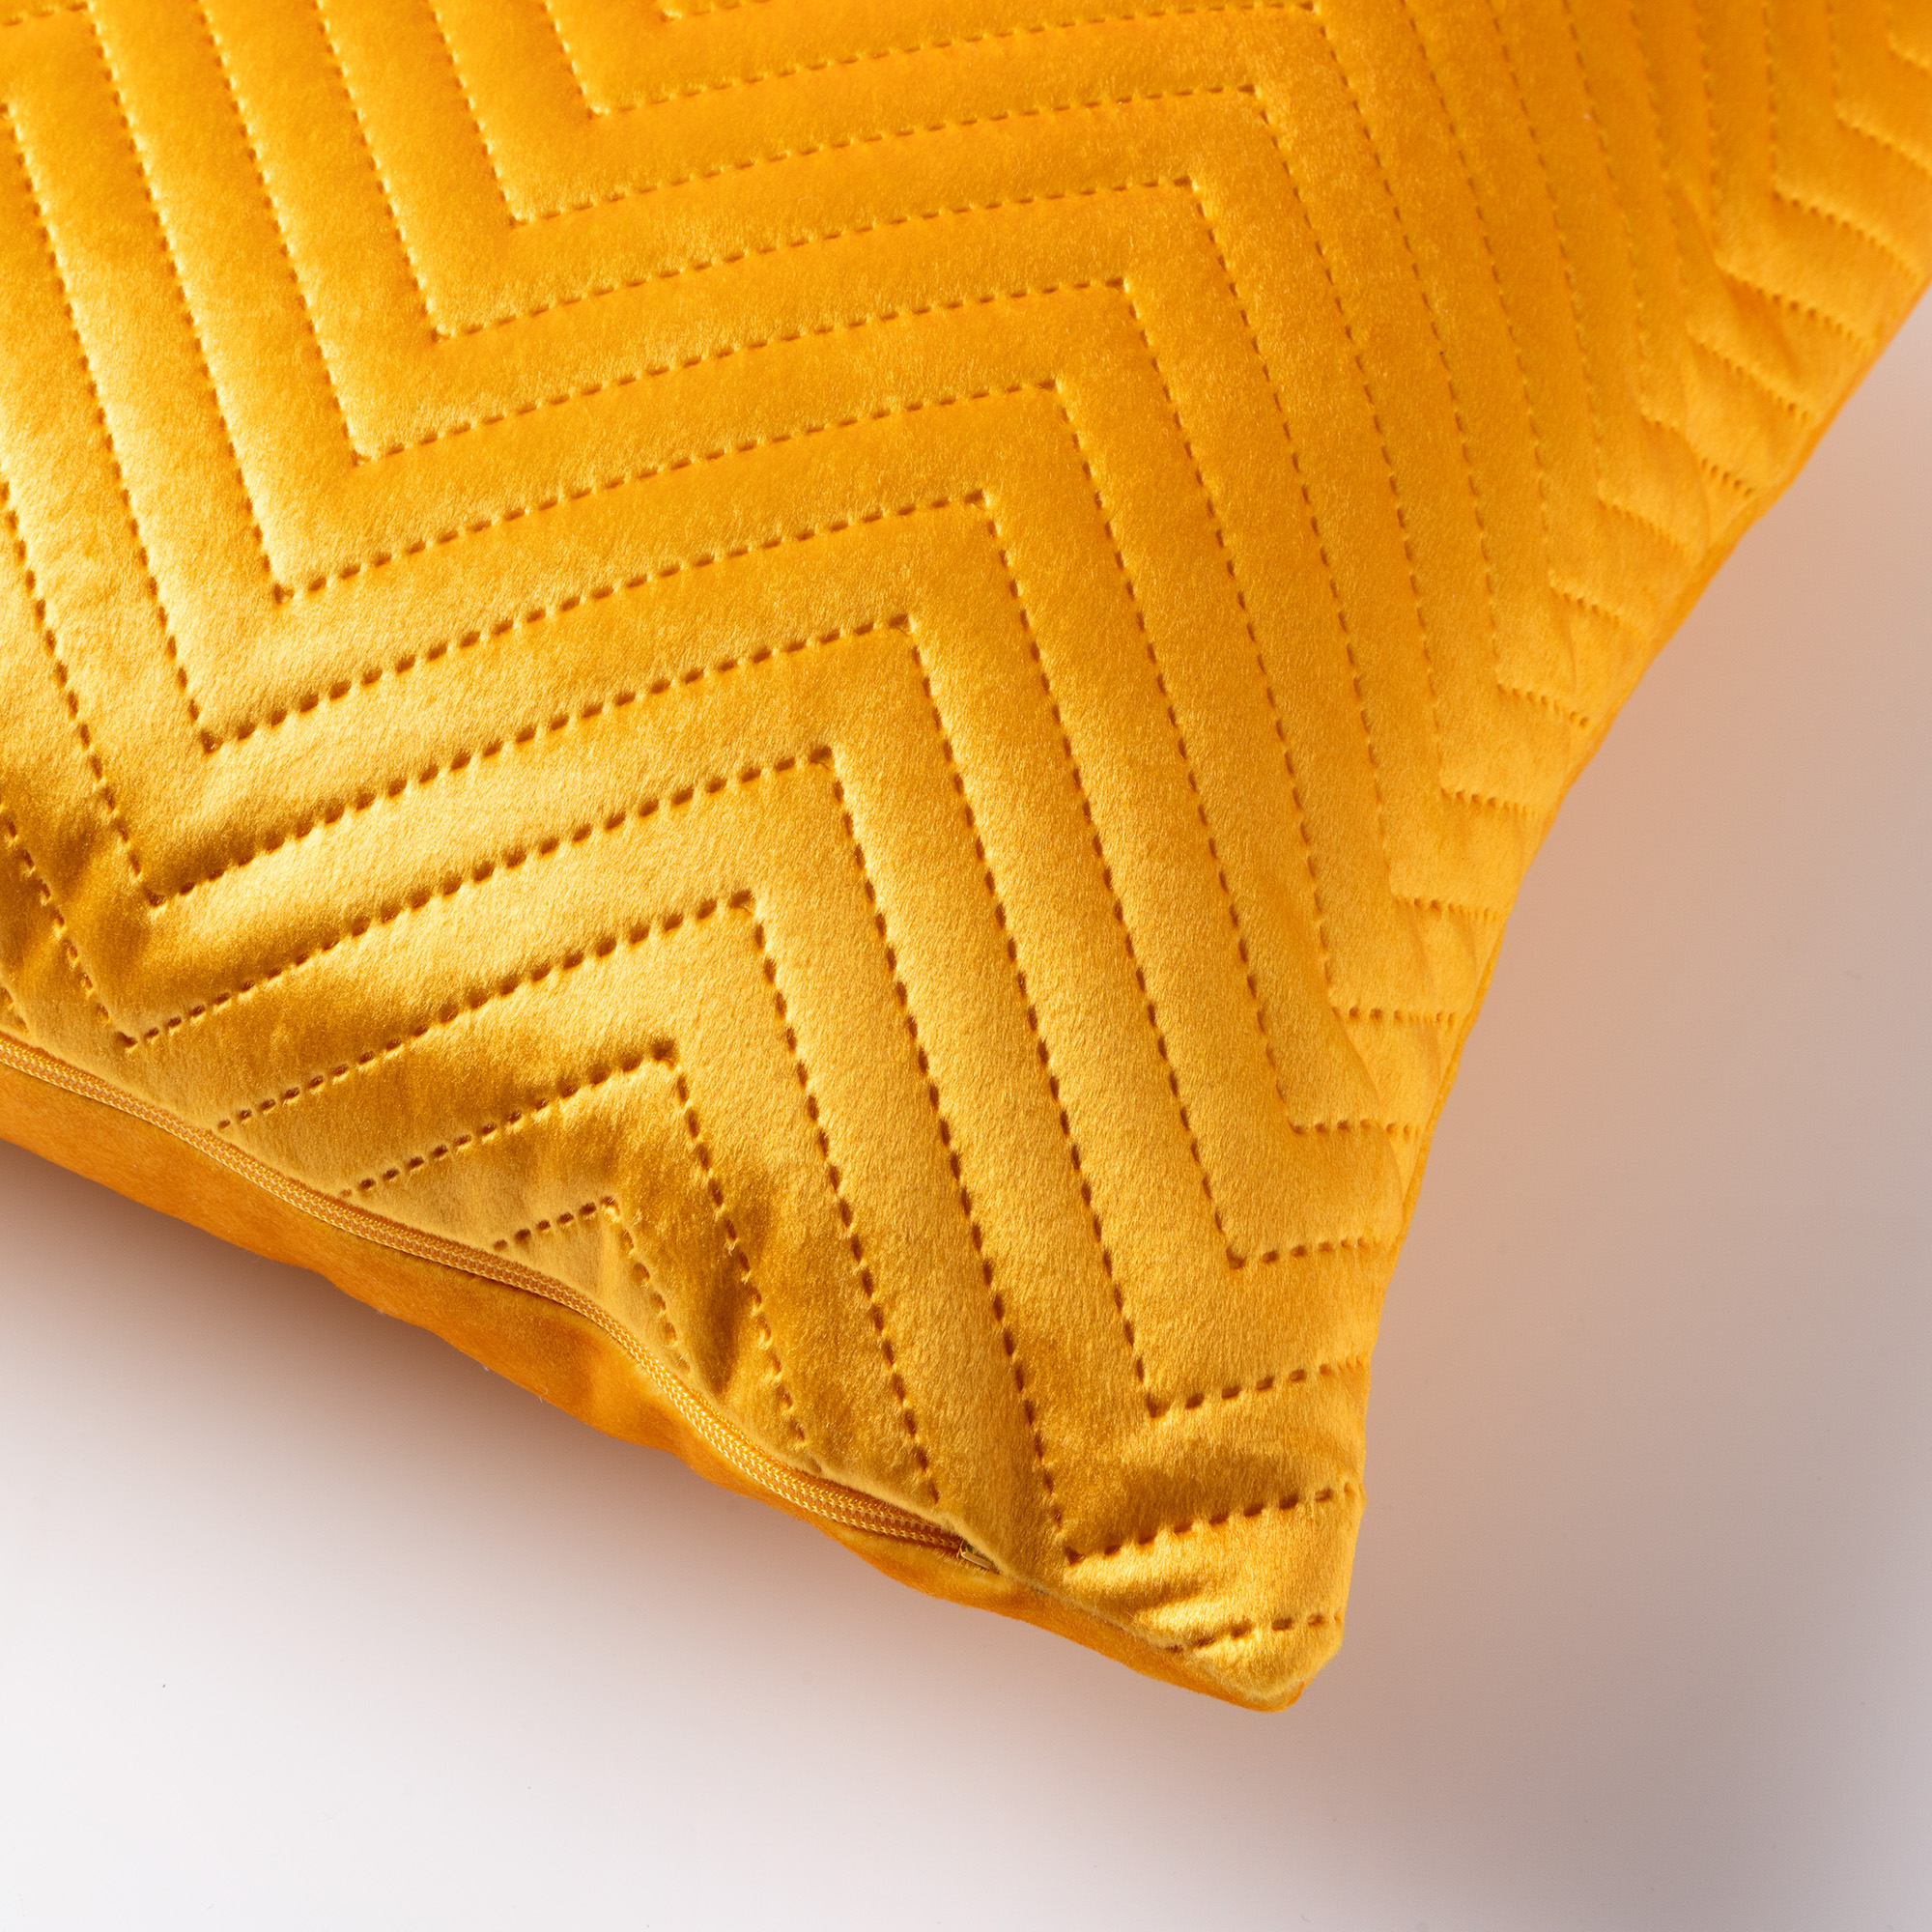 DUKE - Sierkussen 40x40 cm - voorzien van subtiel geometrisch patroon - Golden Glow - geel